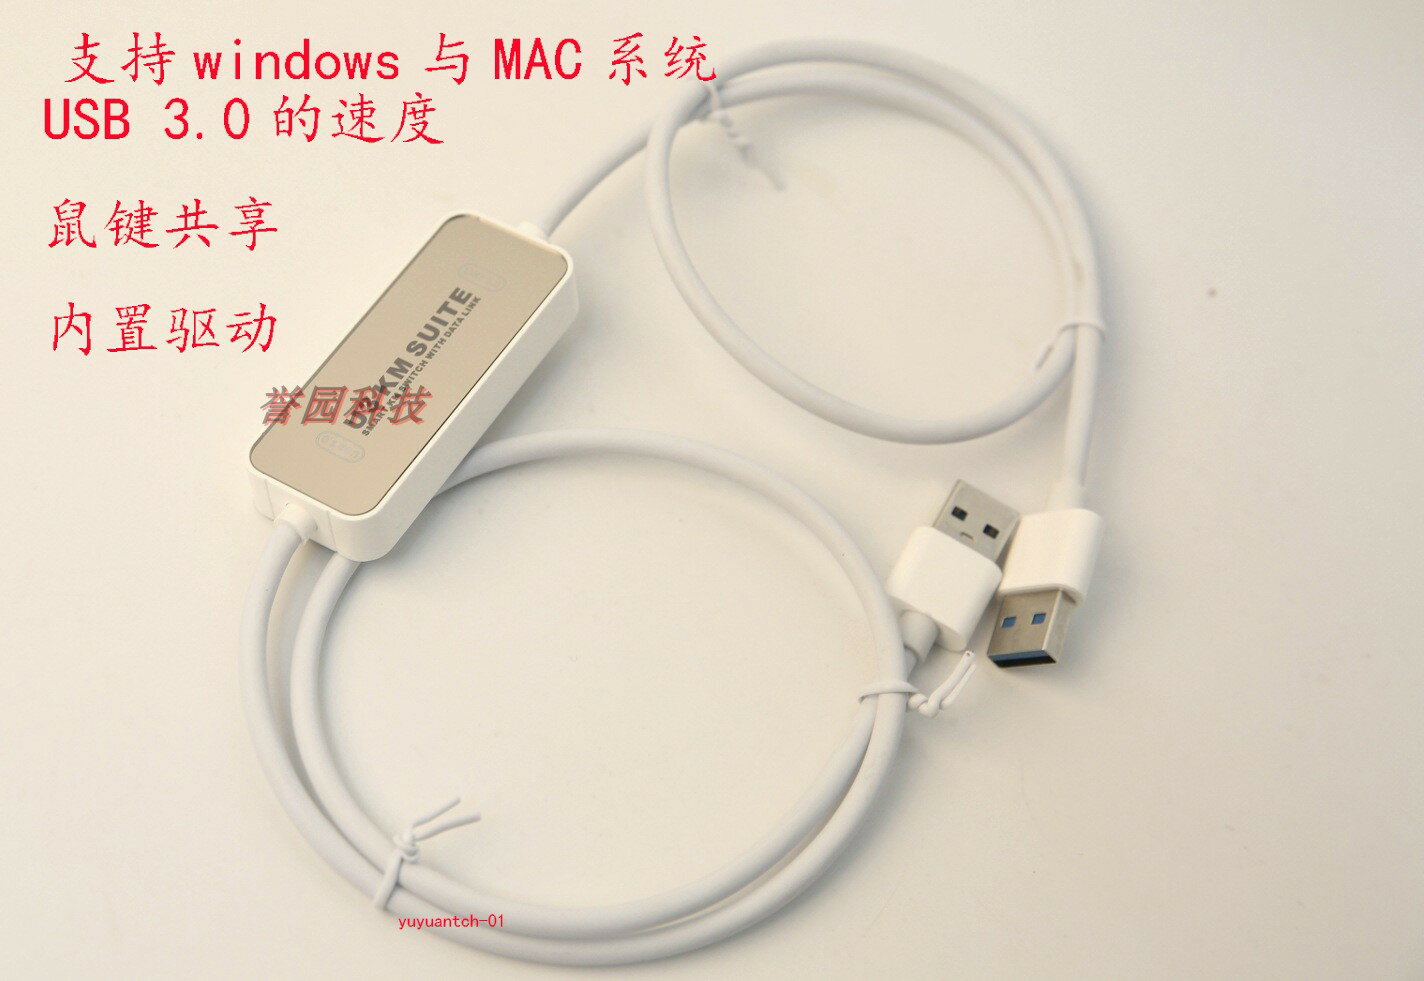 高速USB3.0電腦平板對拷數據線對傳聯機線鍵鼠共享 win7 8 10 MAC